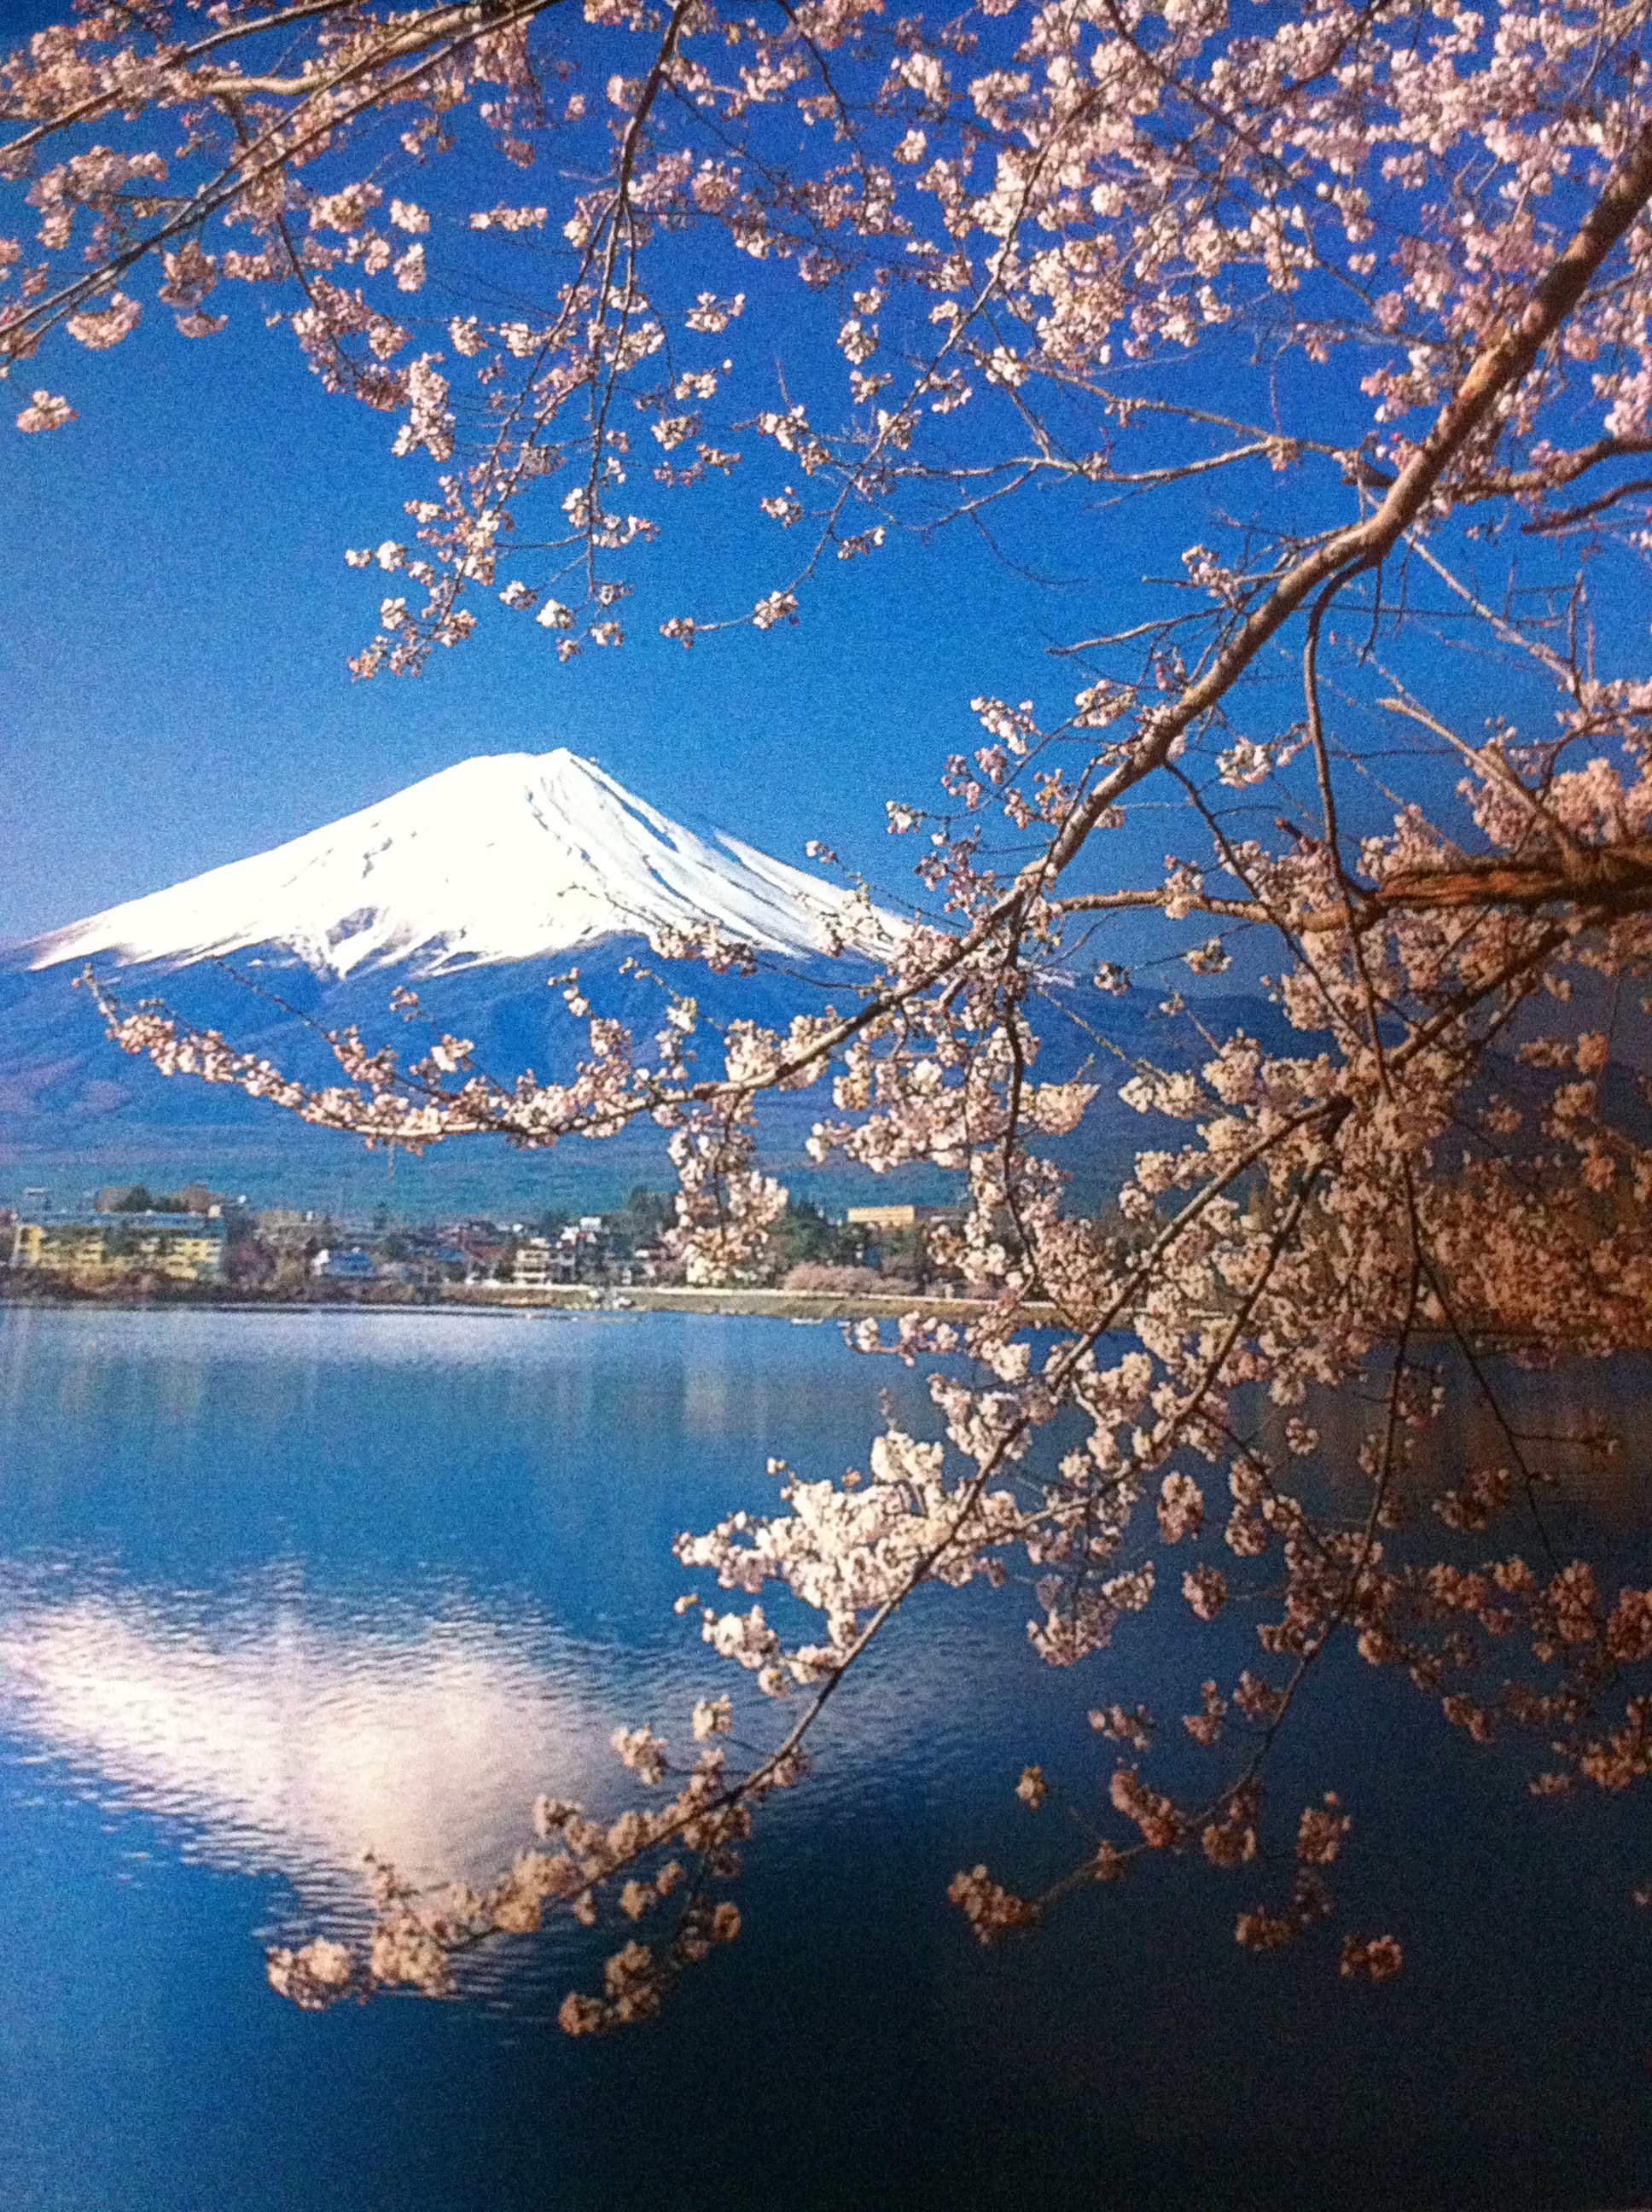 Dibalik Cerita Gunung Fuji Dan Putri Kaguya Ivanprakasacom